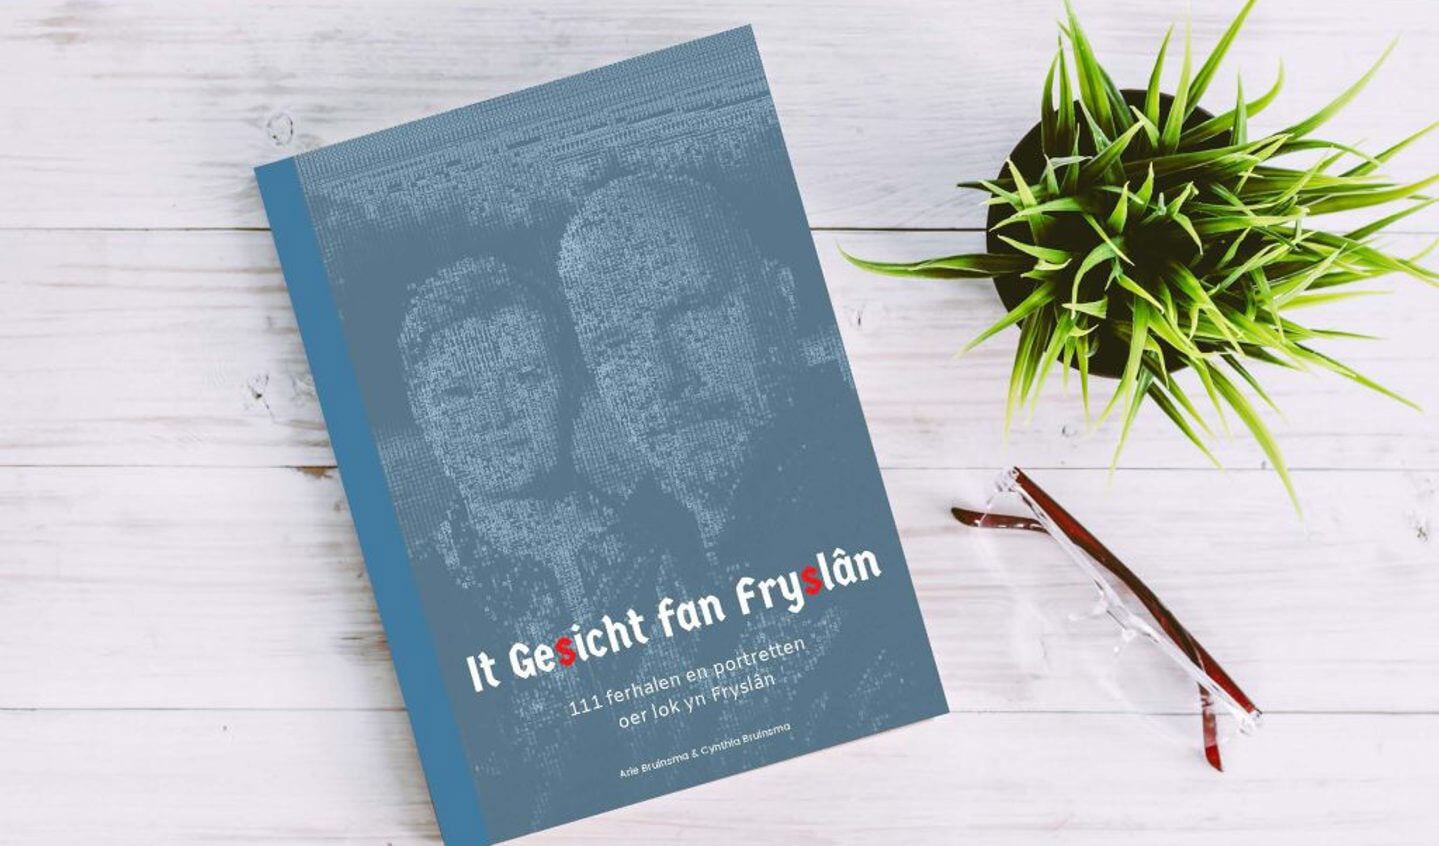 Arie en Cynthia Bruinsma presenteren hun boek It Gesicht fan Fryslân Eigen foto